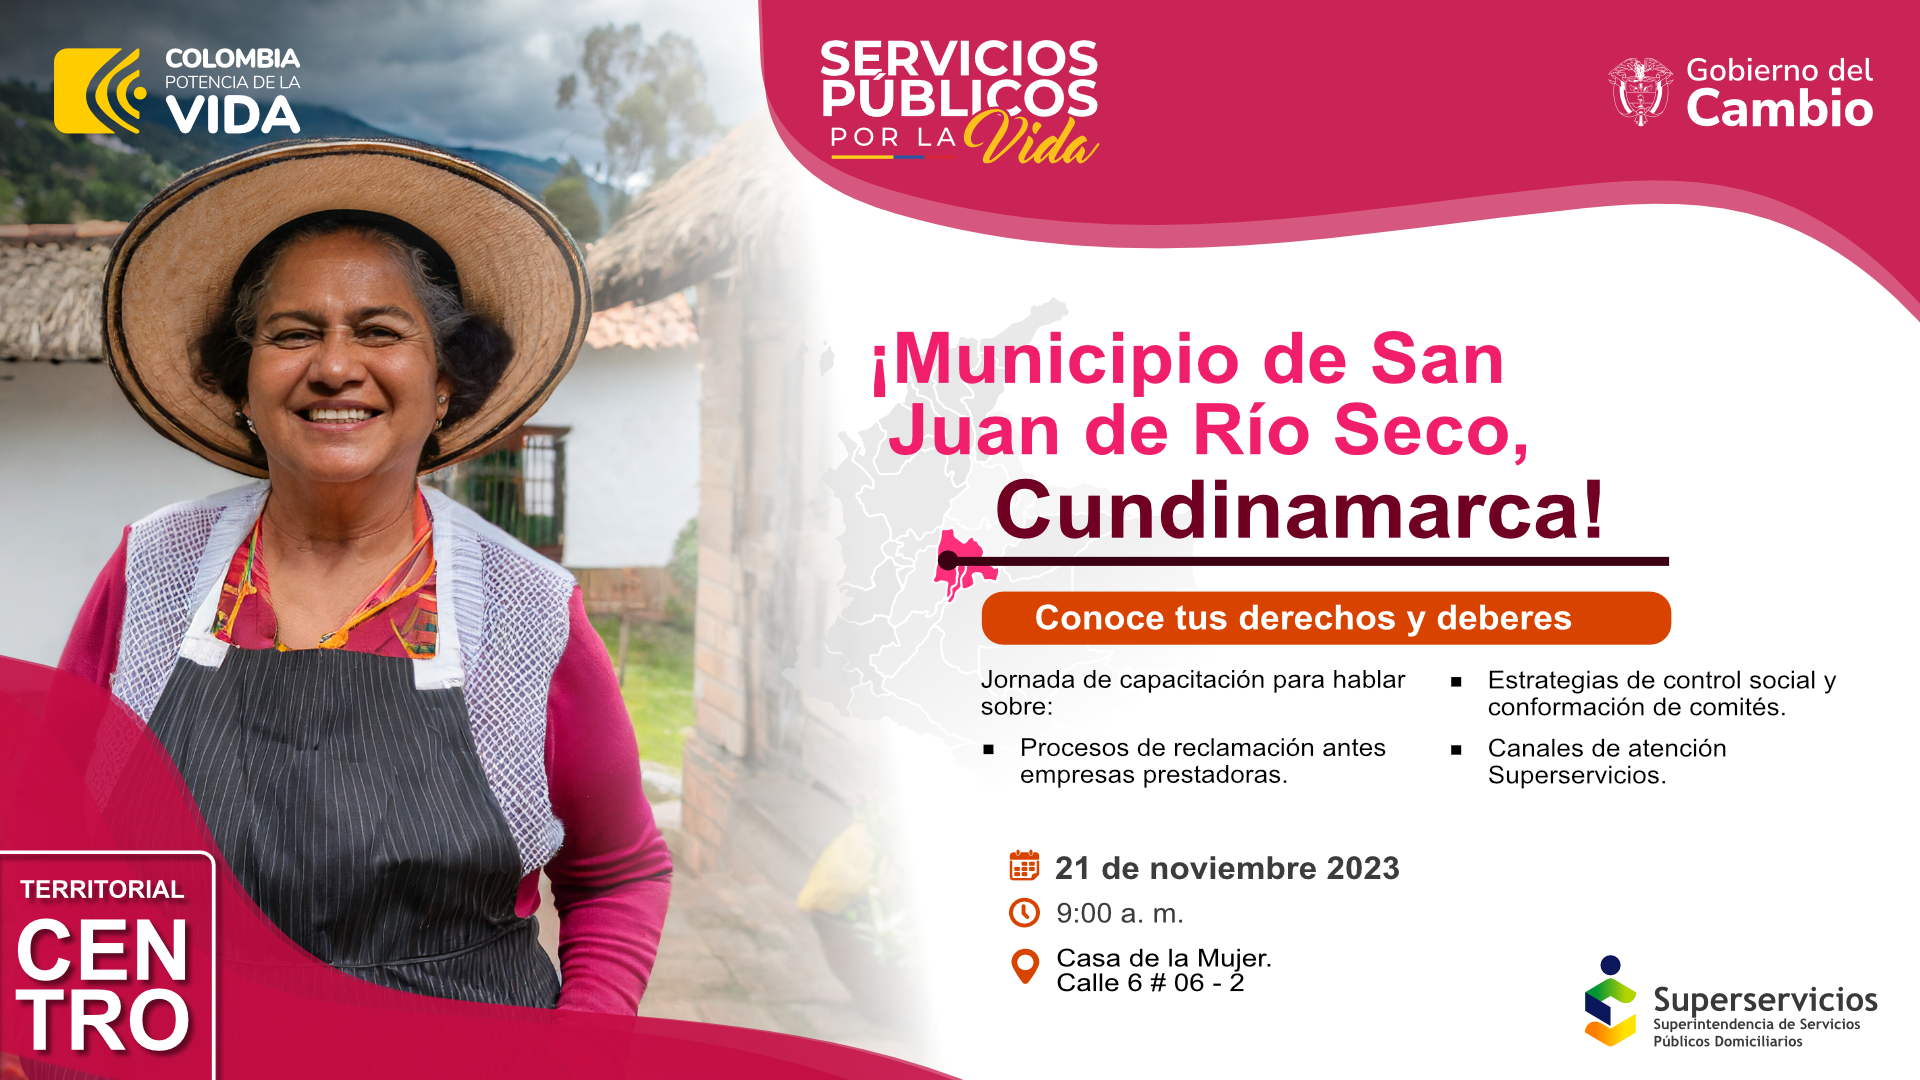 Conoce tus derechos y deberes en San Juan de Río Seco, Cundinamarca
